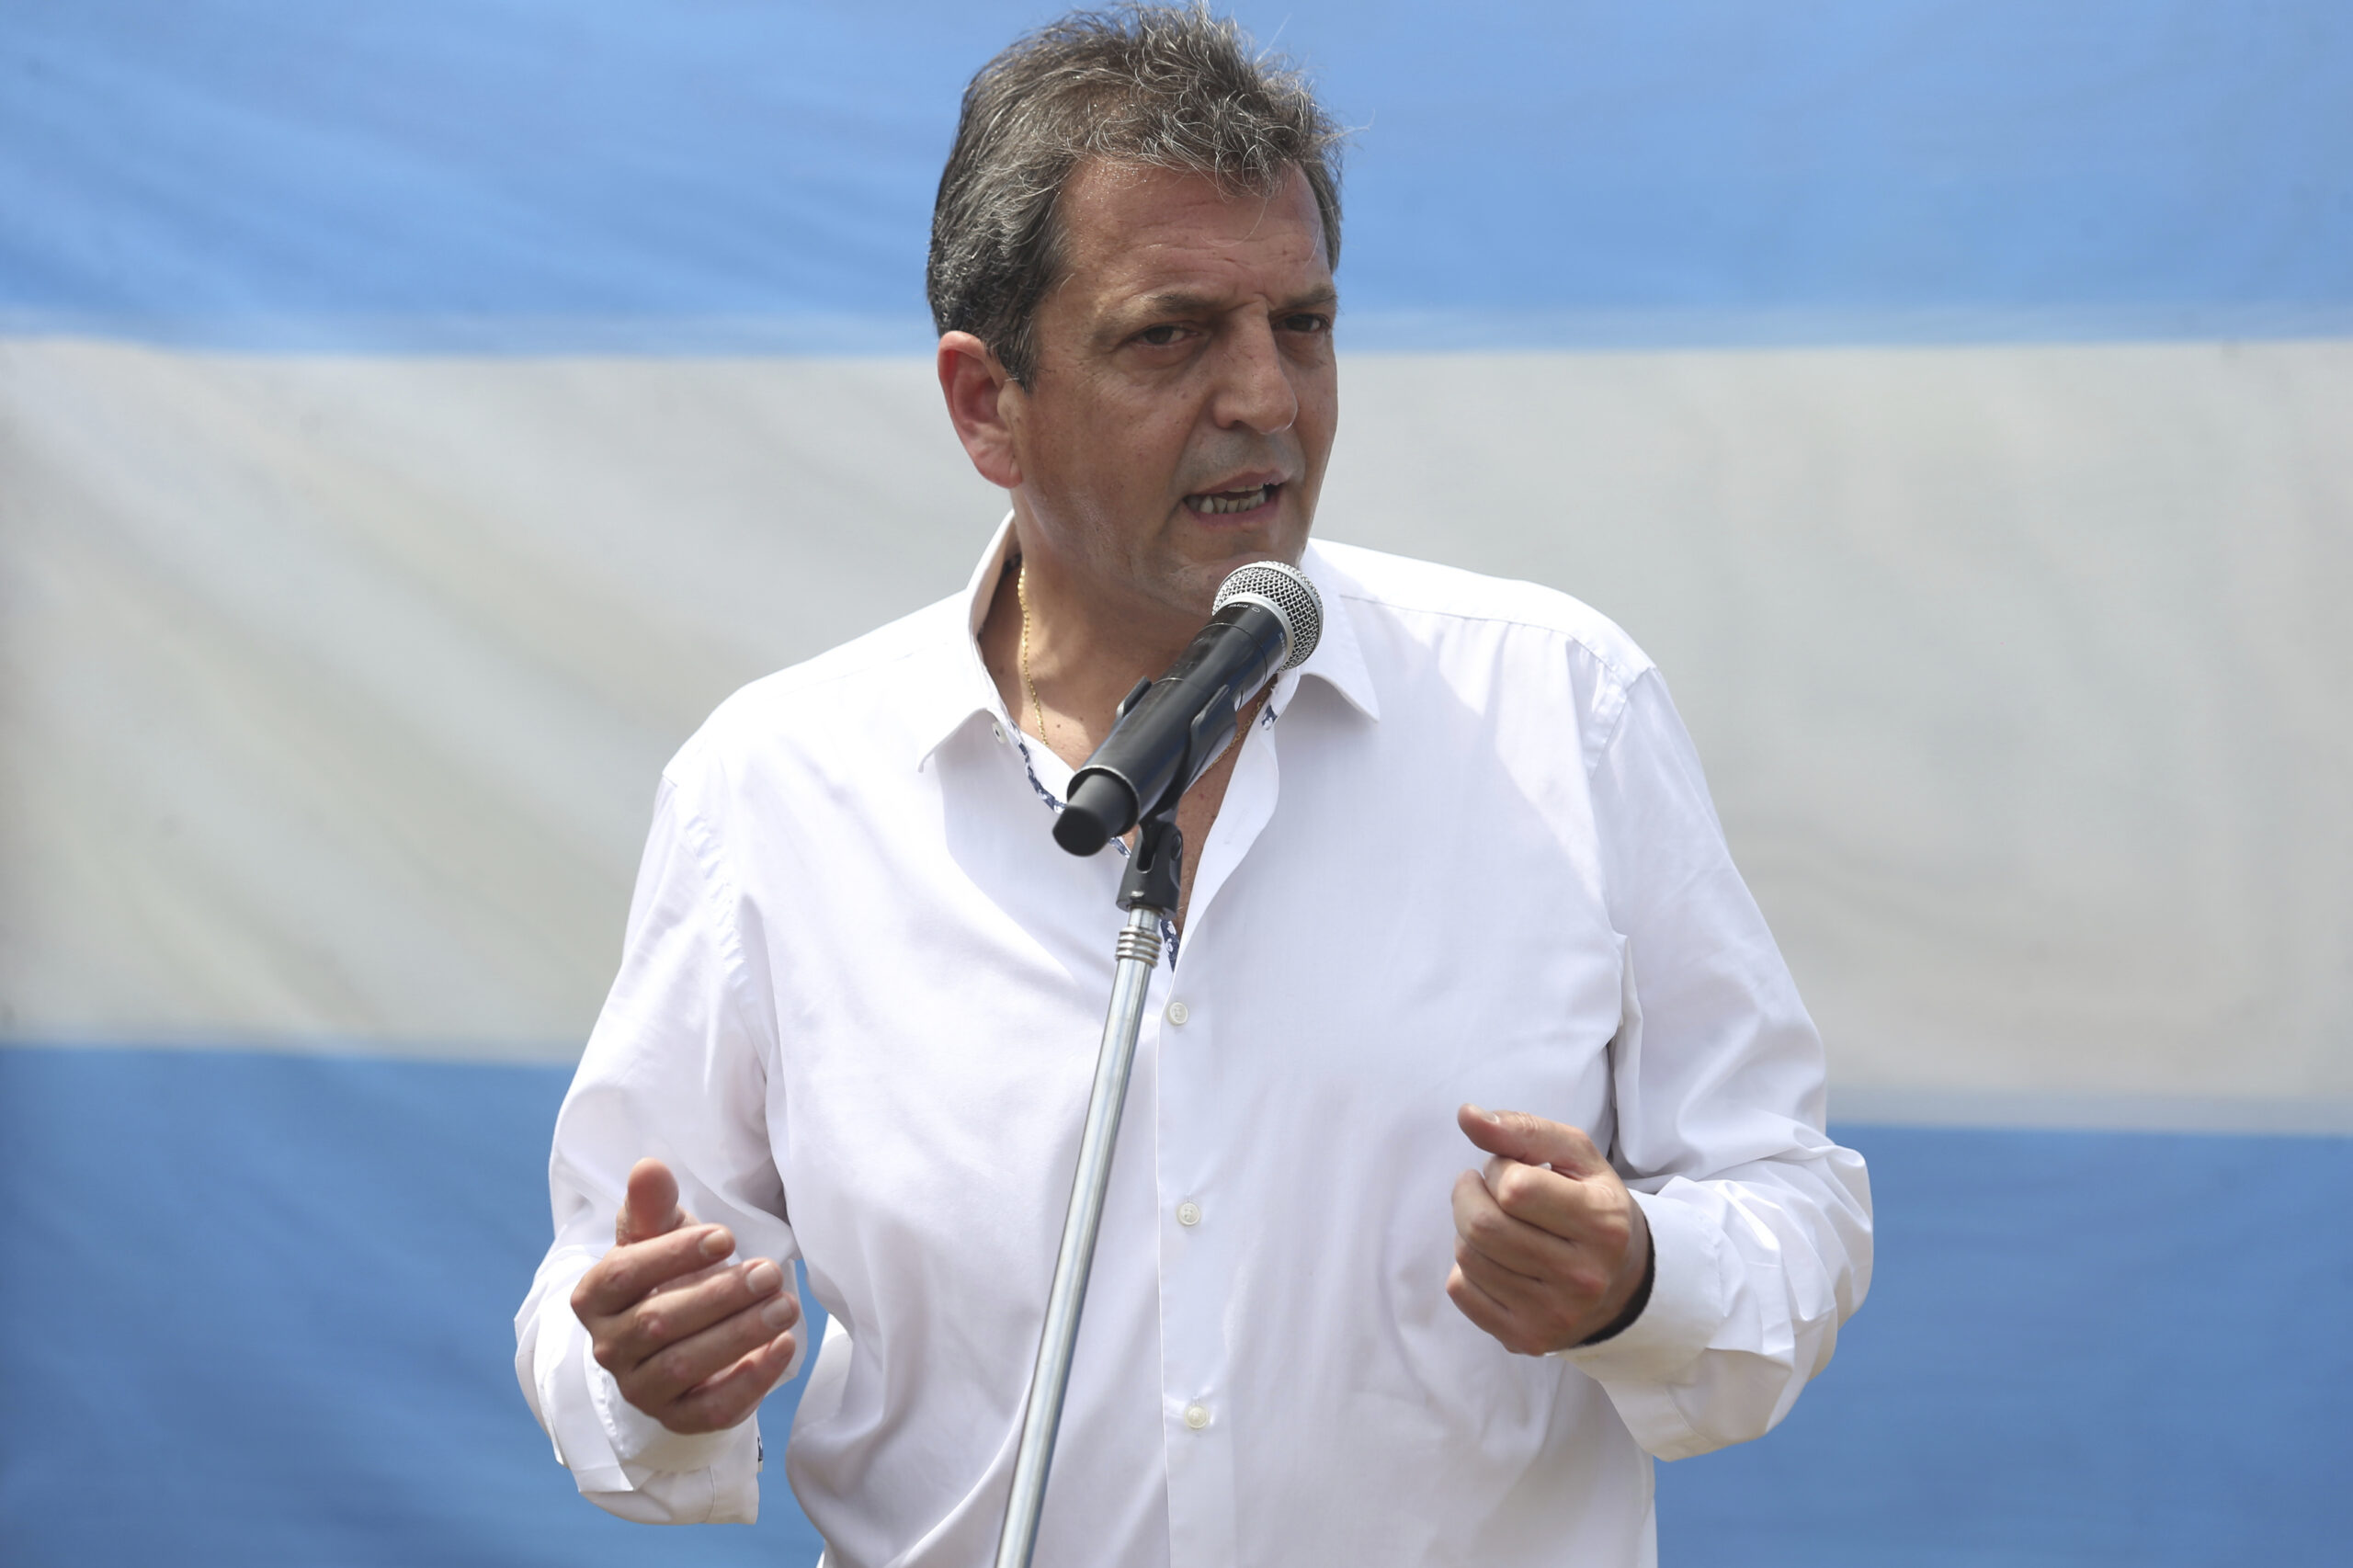 Προεδρικές εκλογές στην Αργεντινή: Στο β΄ γύρο περνούν ο υπουργός Οικονομίας Σ. Μάσα και ο φιλελεύθερος οικονομολόγος Χ. Μιλέι